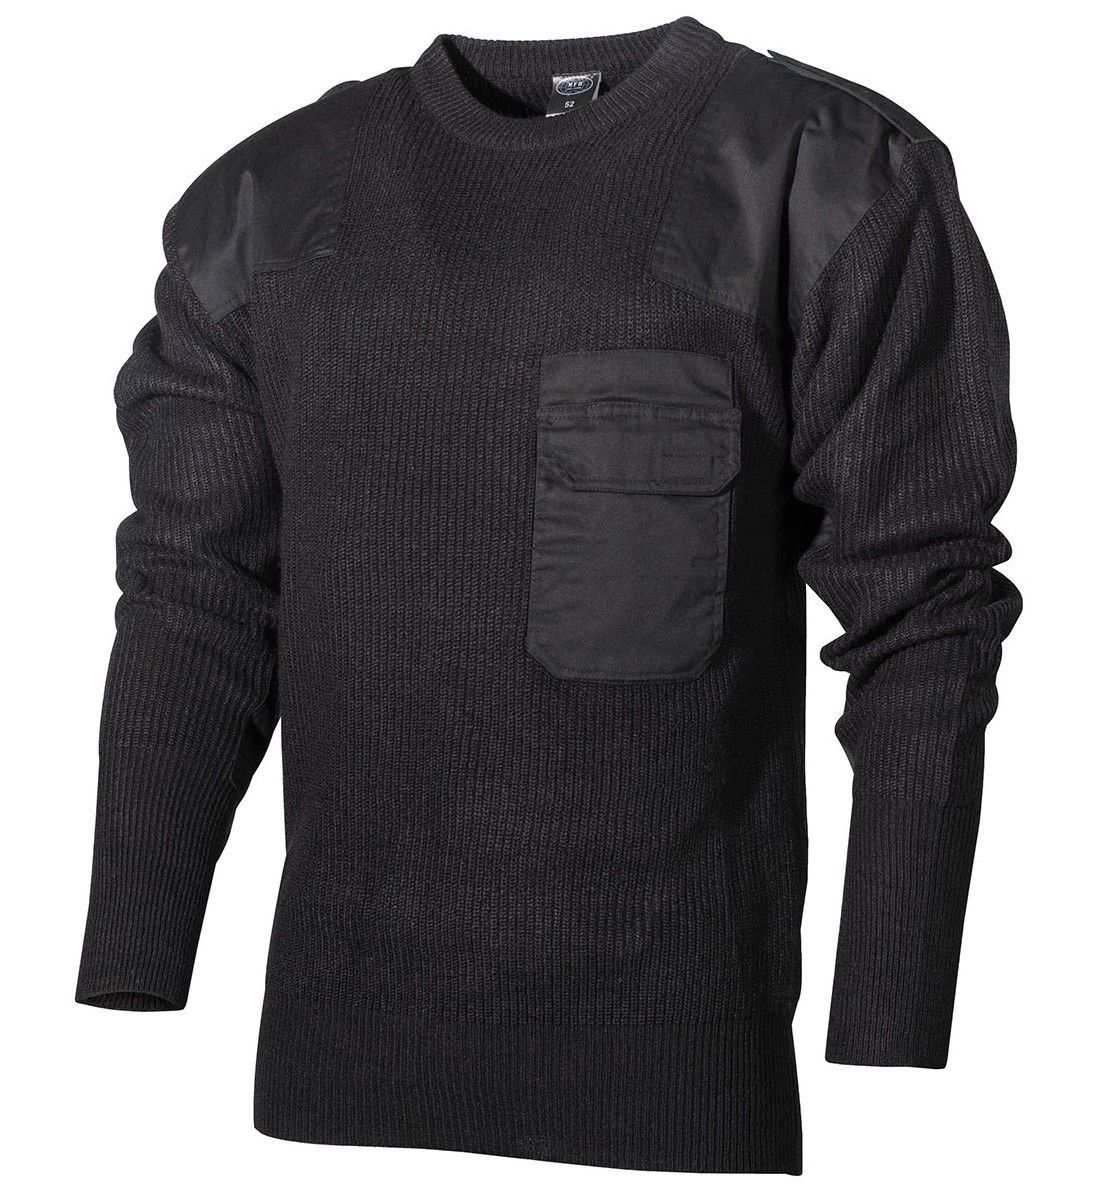 sweter bw wojskowy czarny długi 62